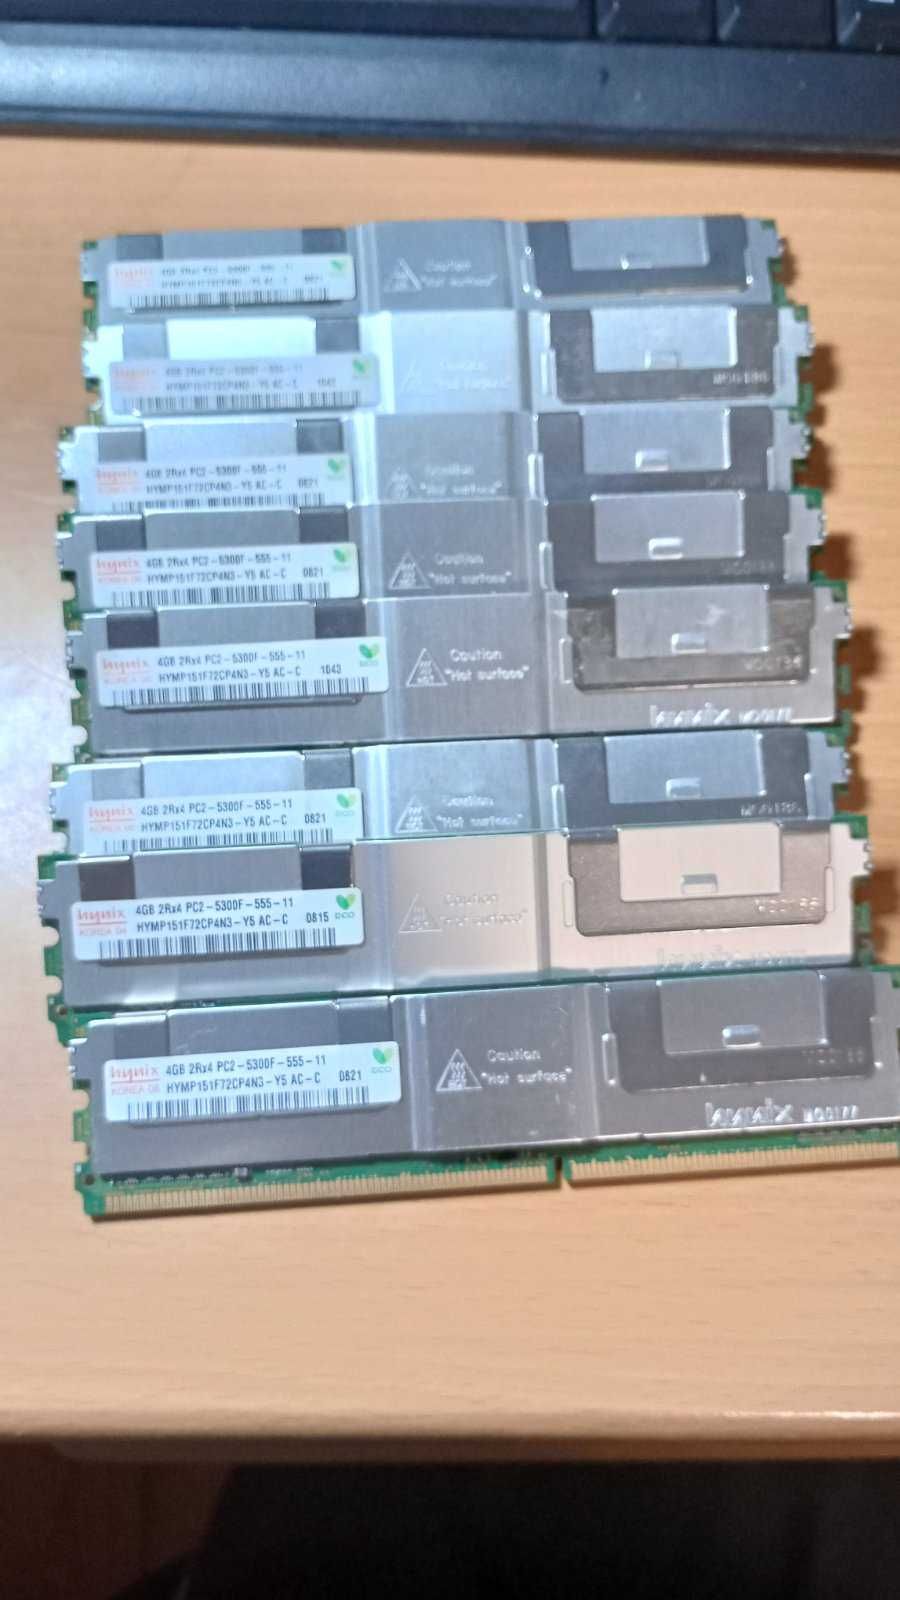 Серверная DDR2 4gb 5300F 555 11 для серверов